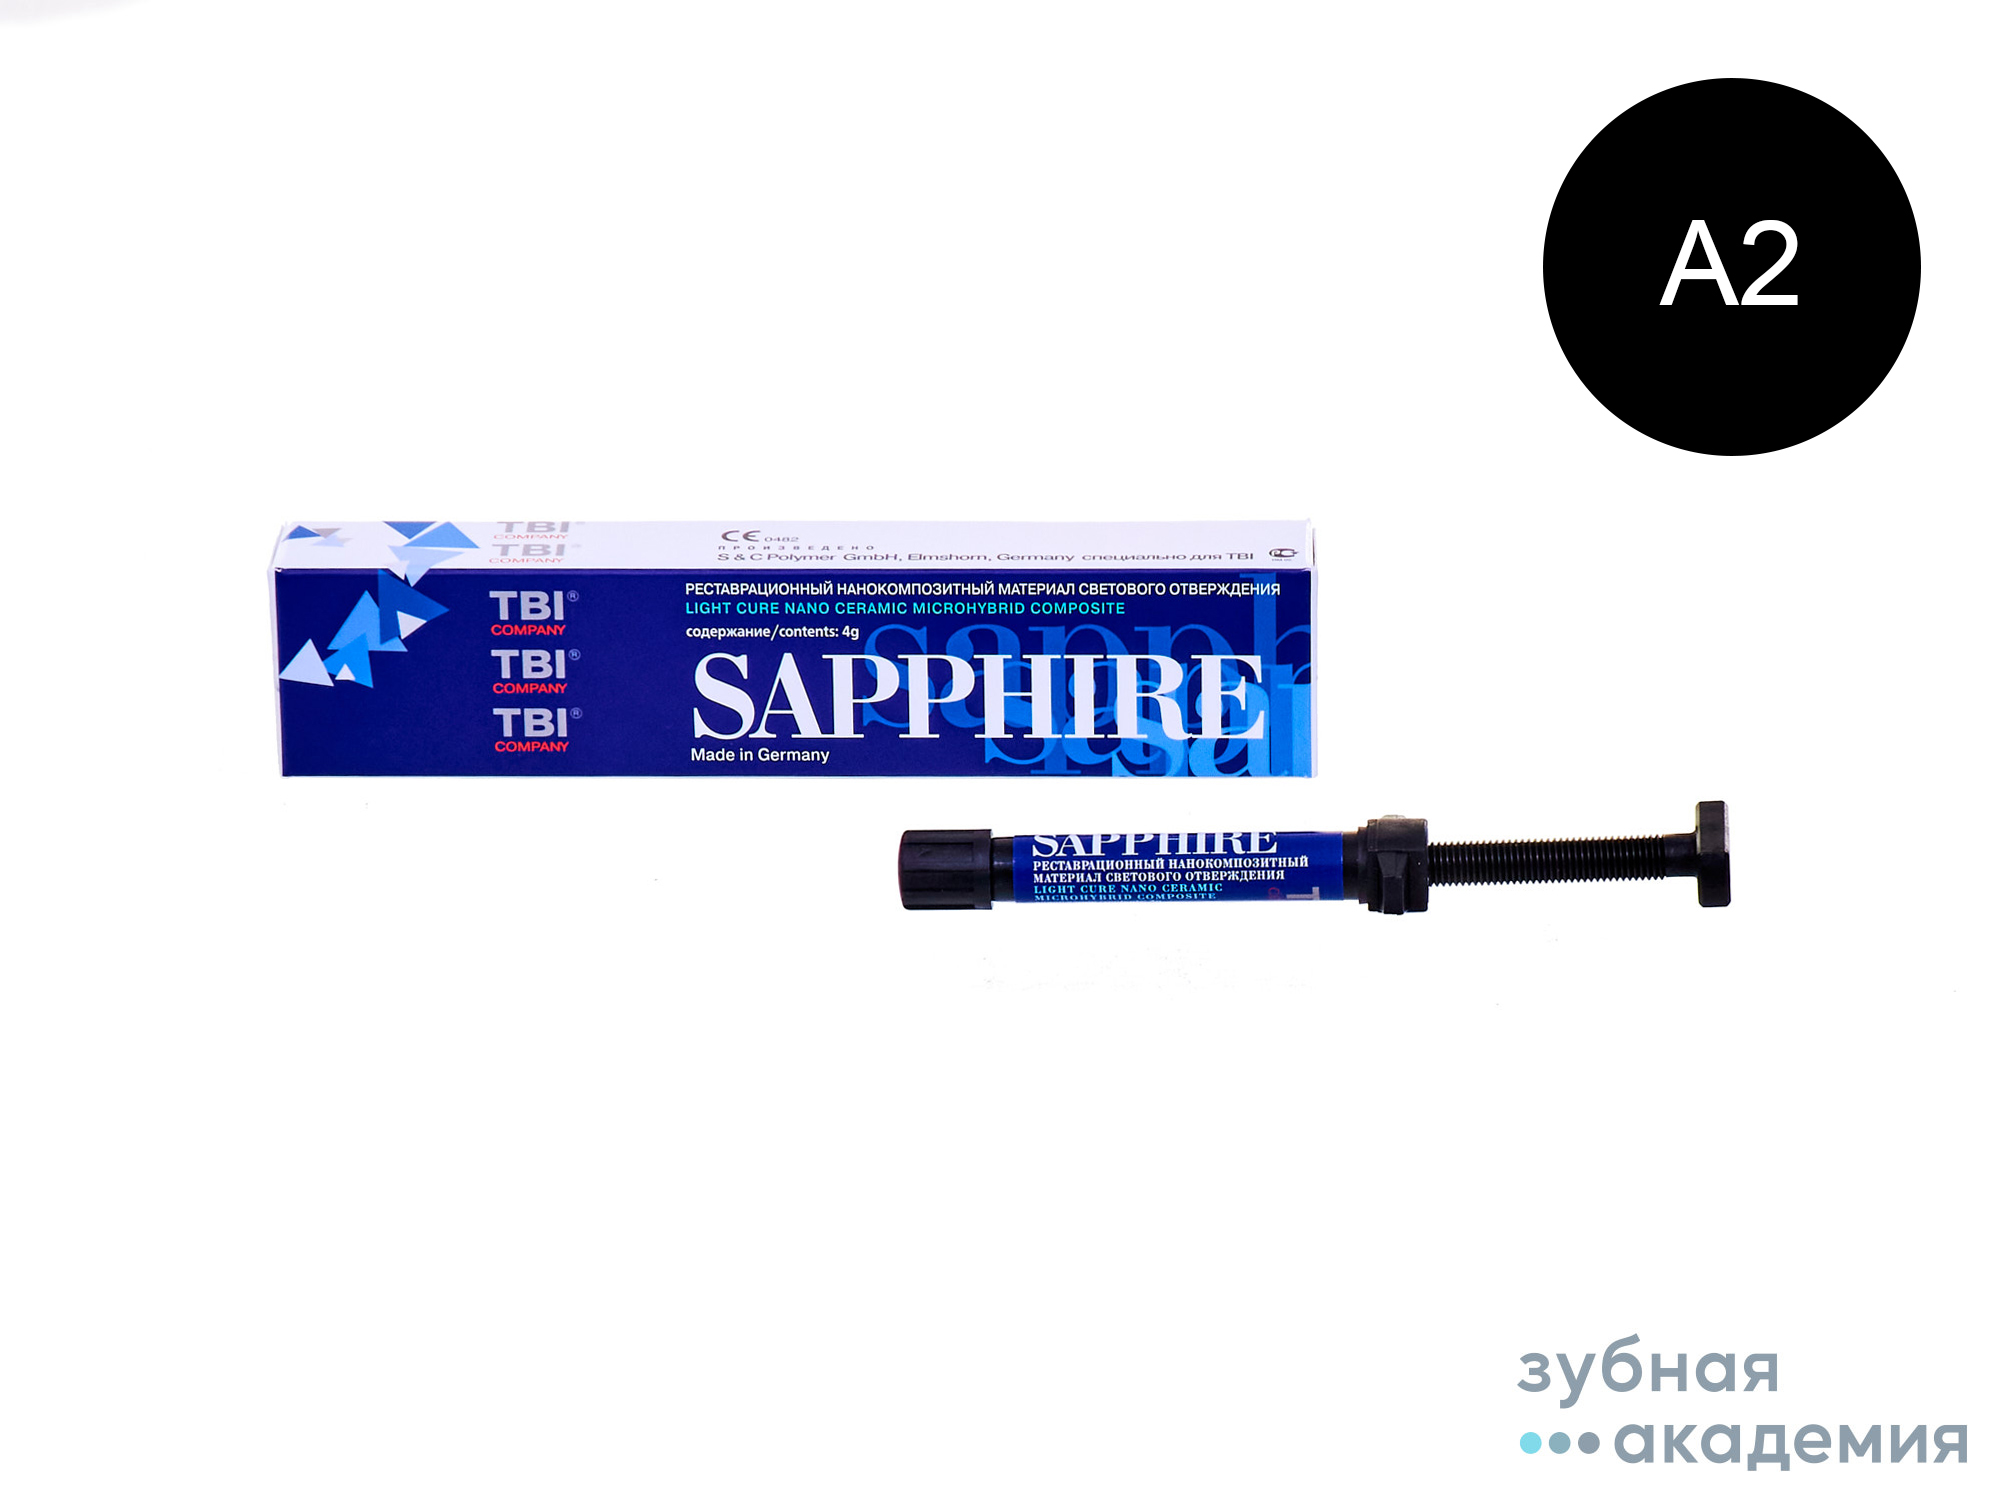 Sapphire А2 / Сапфир A2 нанокомпозит (4 г) TBI/S&C/Германия